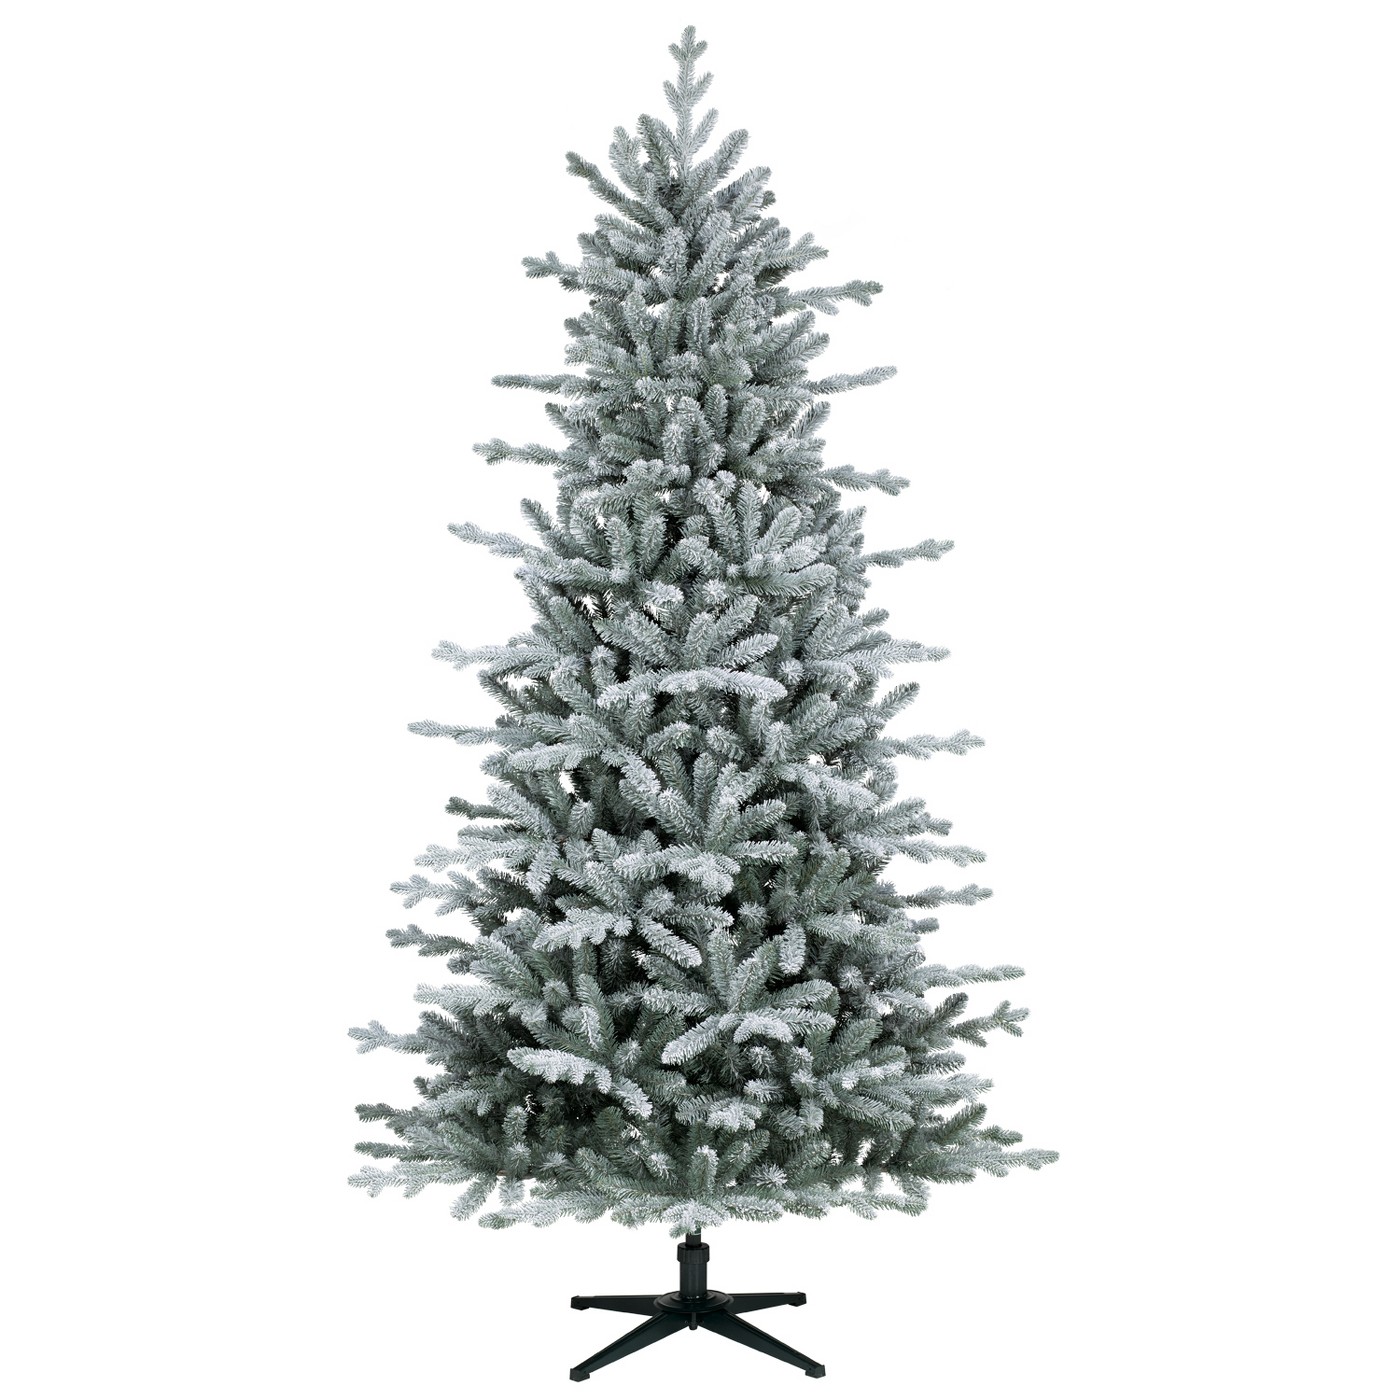 7ft Unlit Artificial Christmas Tree Flocked Balsam Fir - Wondershopâ¢ - image 1 of 3